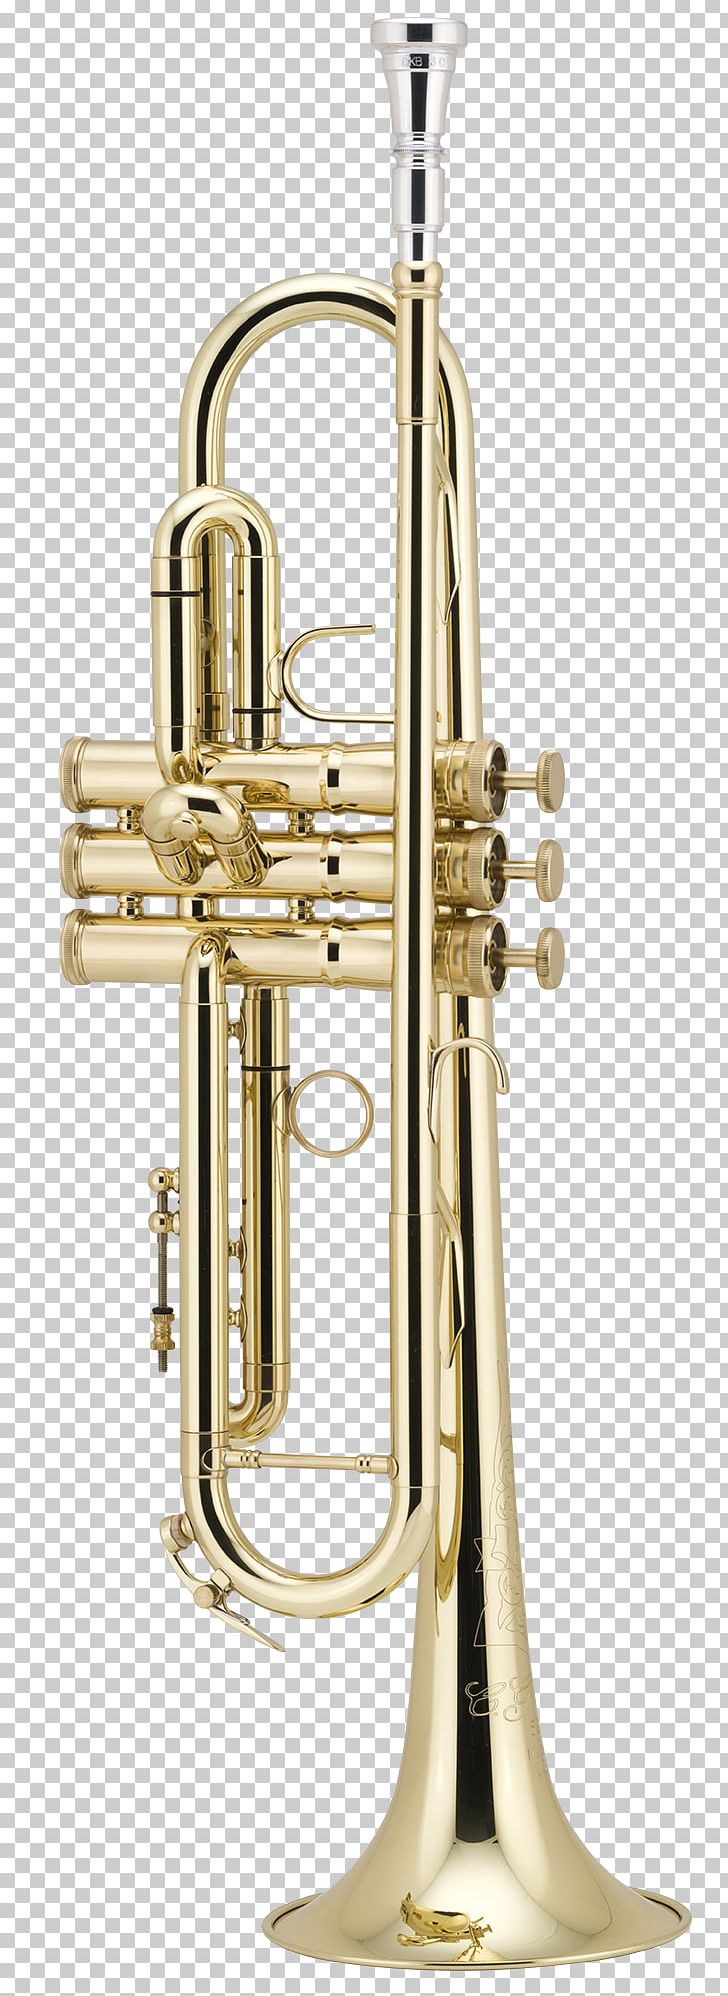 Trumpet Brass Instruments Musical Instruments Cornet Flugelhorn PNG, Clipart, Alto Horn, Brass, Brass Instrument, Brass Instruments, Bugle Free PNG Download